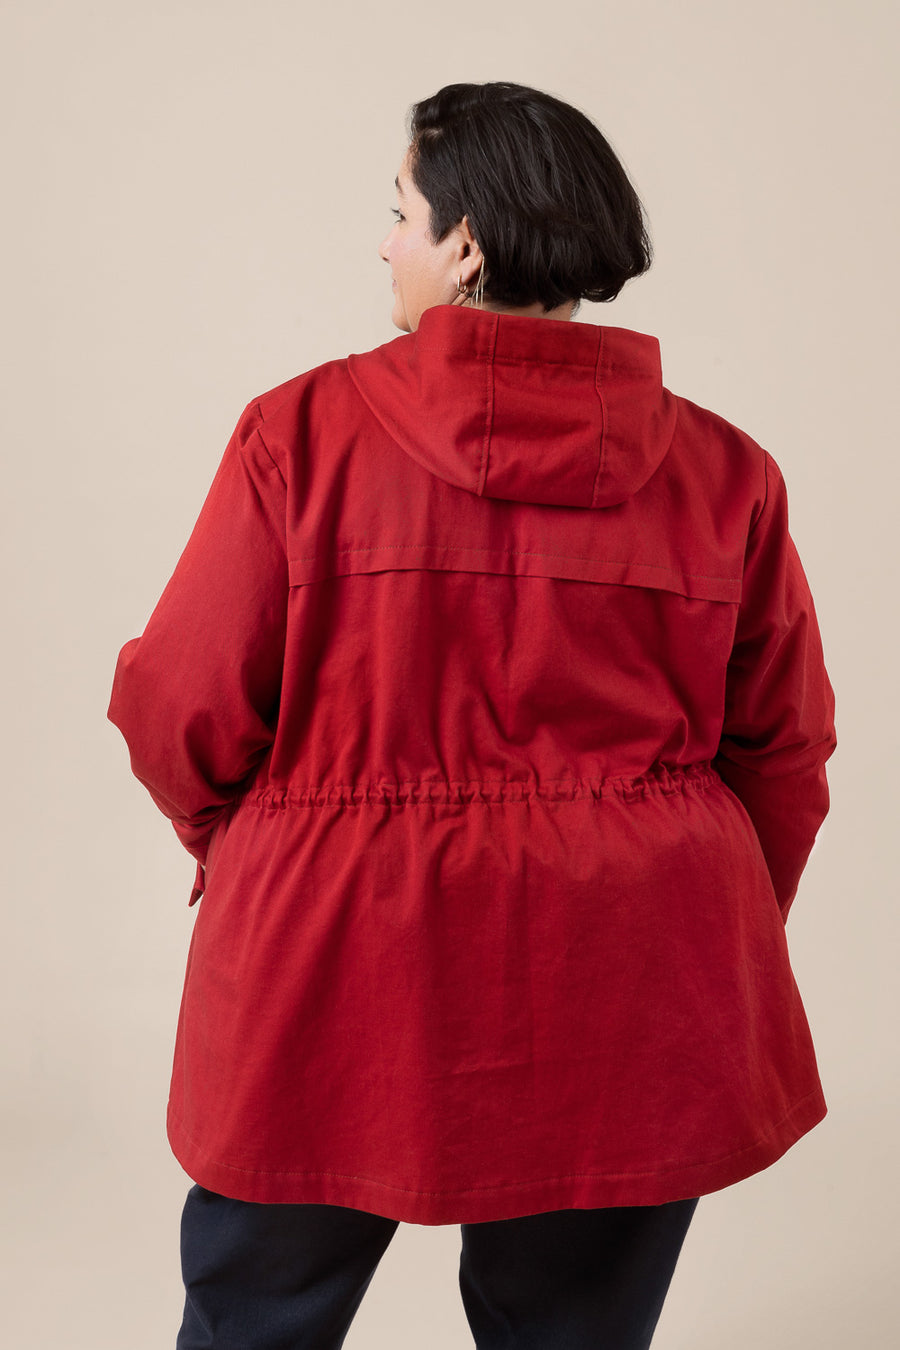 Kelly Anorak Pattern | Plus Size Jacket Pattern | Closet Core Patterns